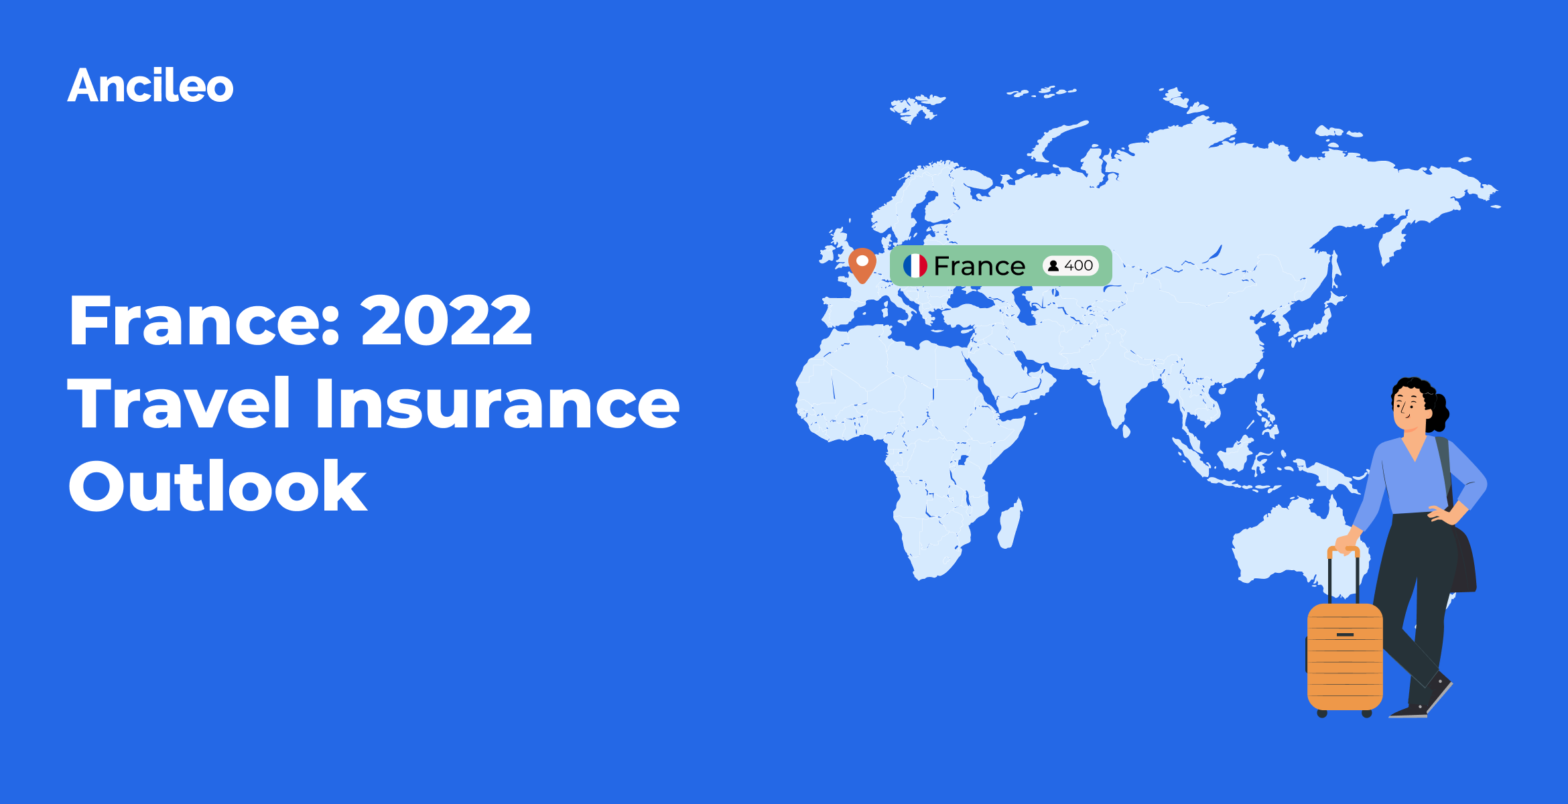 France: 2022 Travel Insurance Outlook